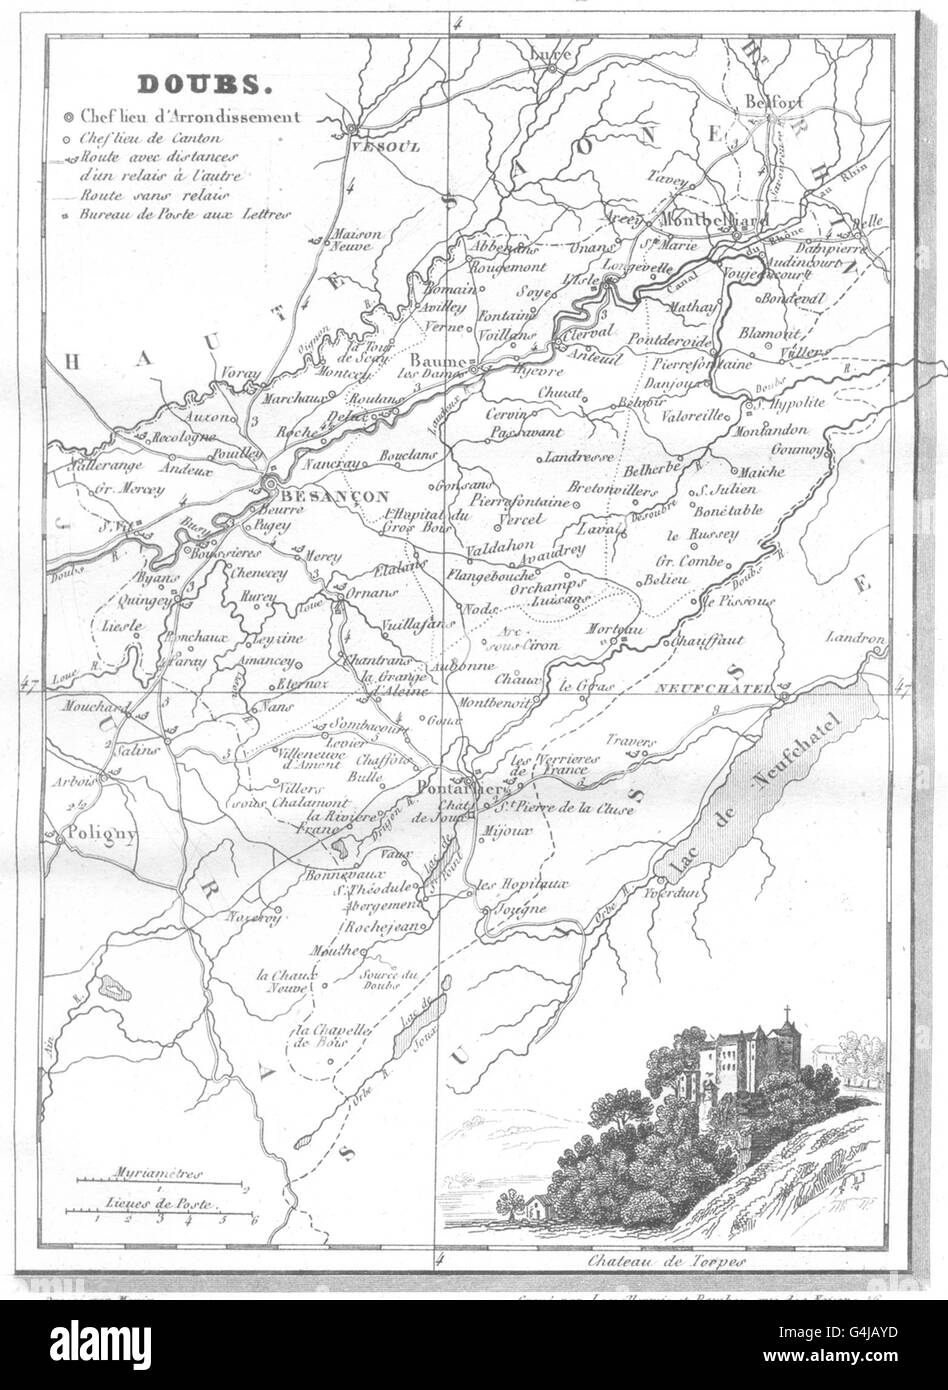 DOUBS: Doubs. Département , 1835 antique map Stock Photo